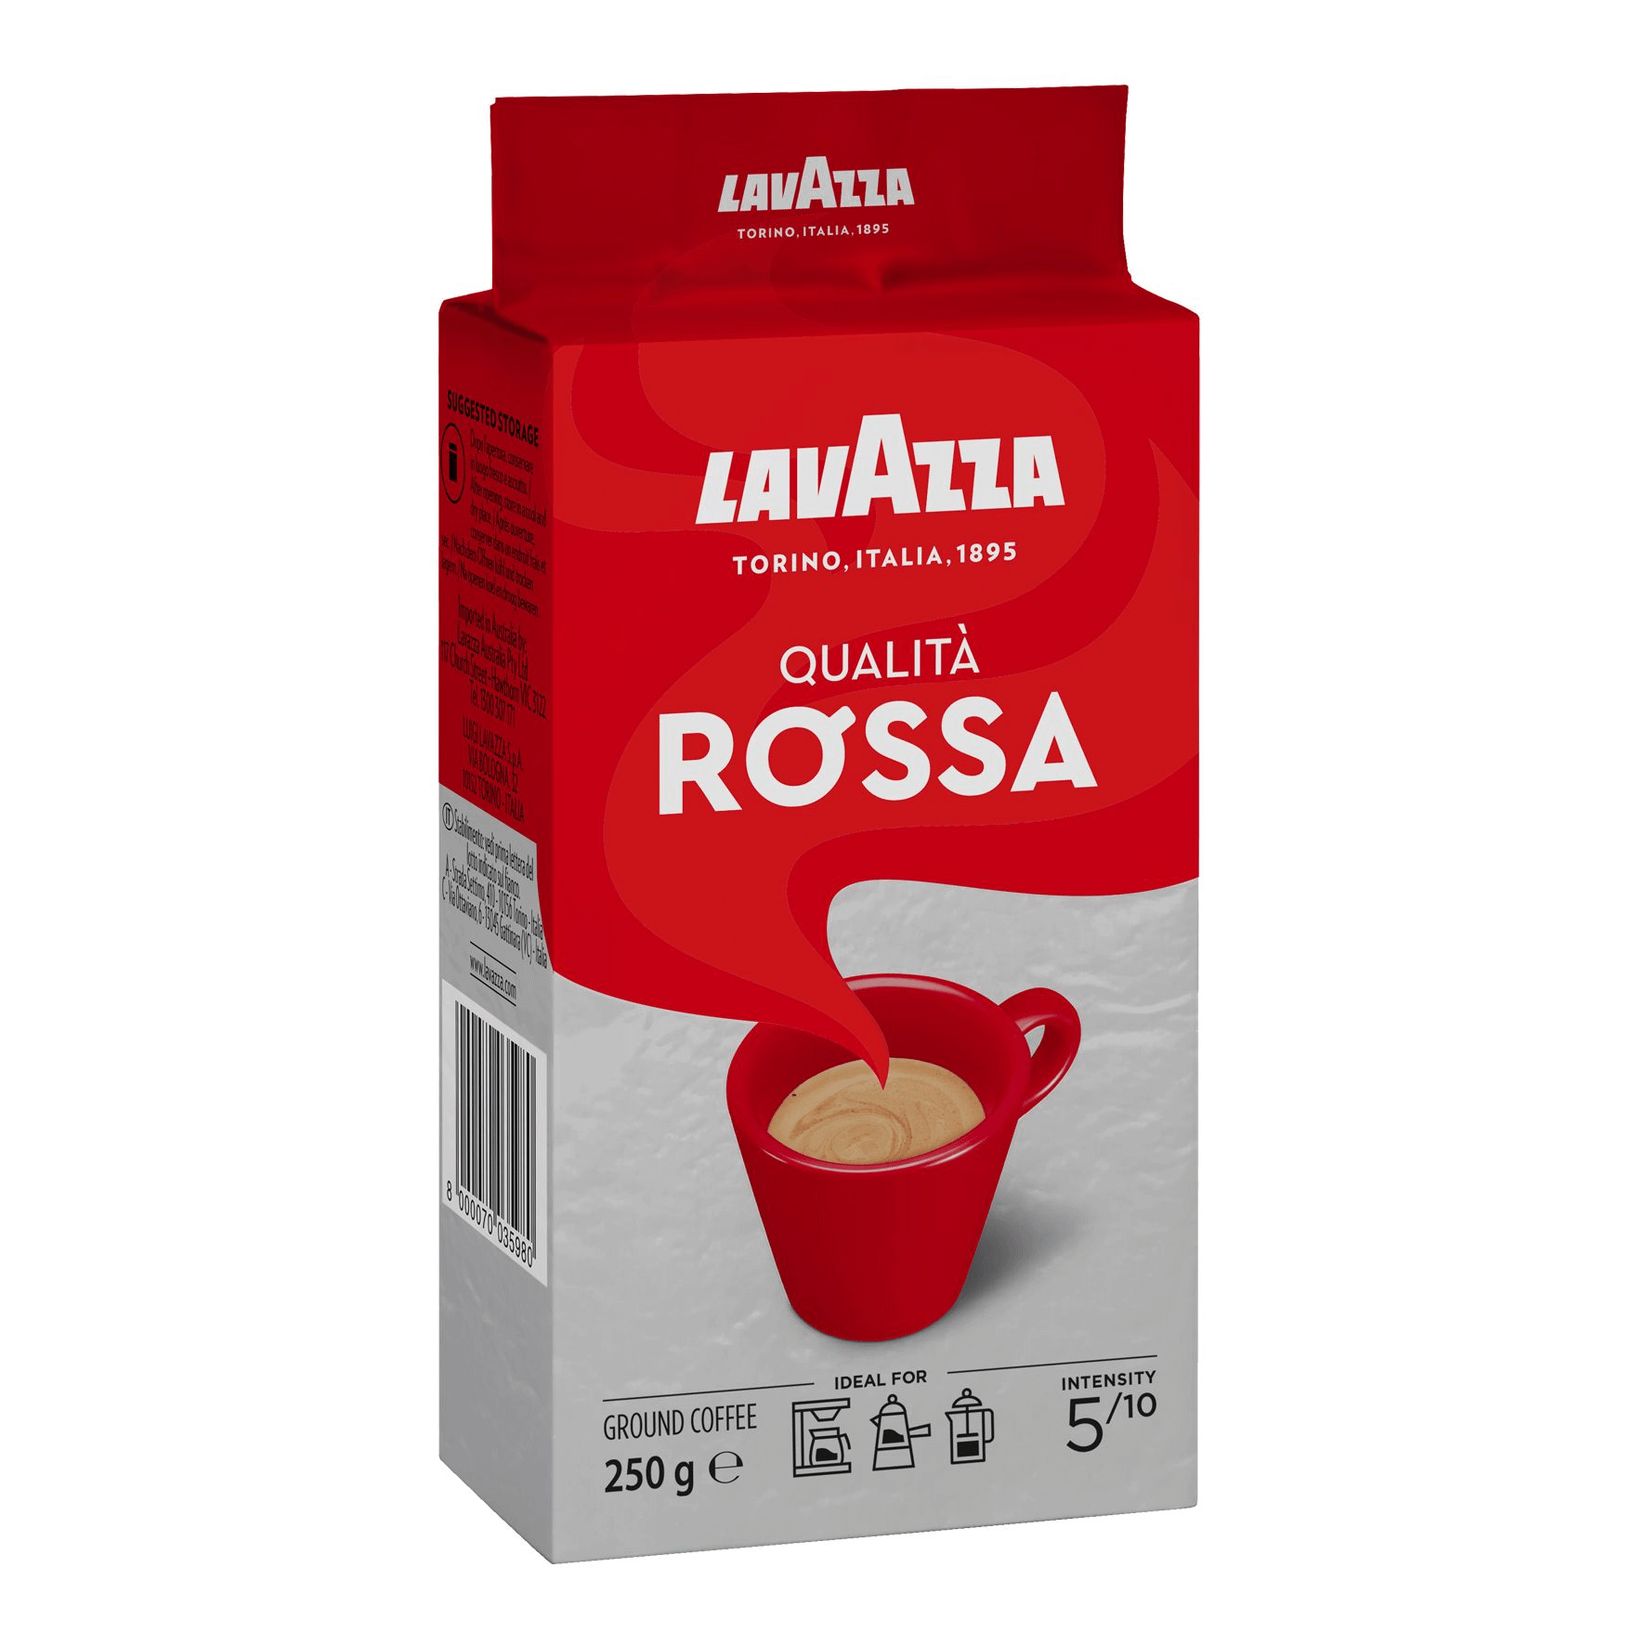 Кофе молотый Lavazza qualita Rossa 250гр. Lavazza qualita Rossa кофе молотый 250 г. Лавацца кофе 250 гр qualita. Лавацца кофе Росса 250г. 1х6 молотый. Кофе молотый lavazza qualita